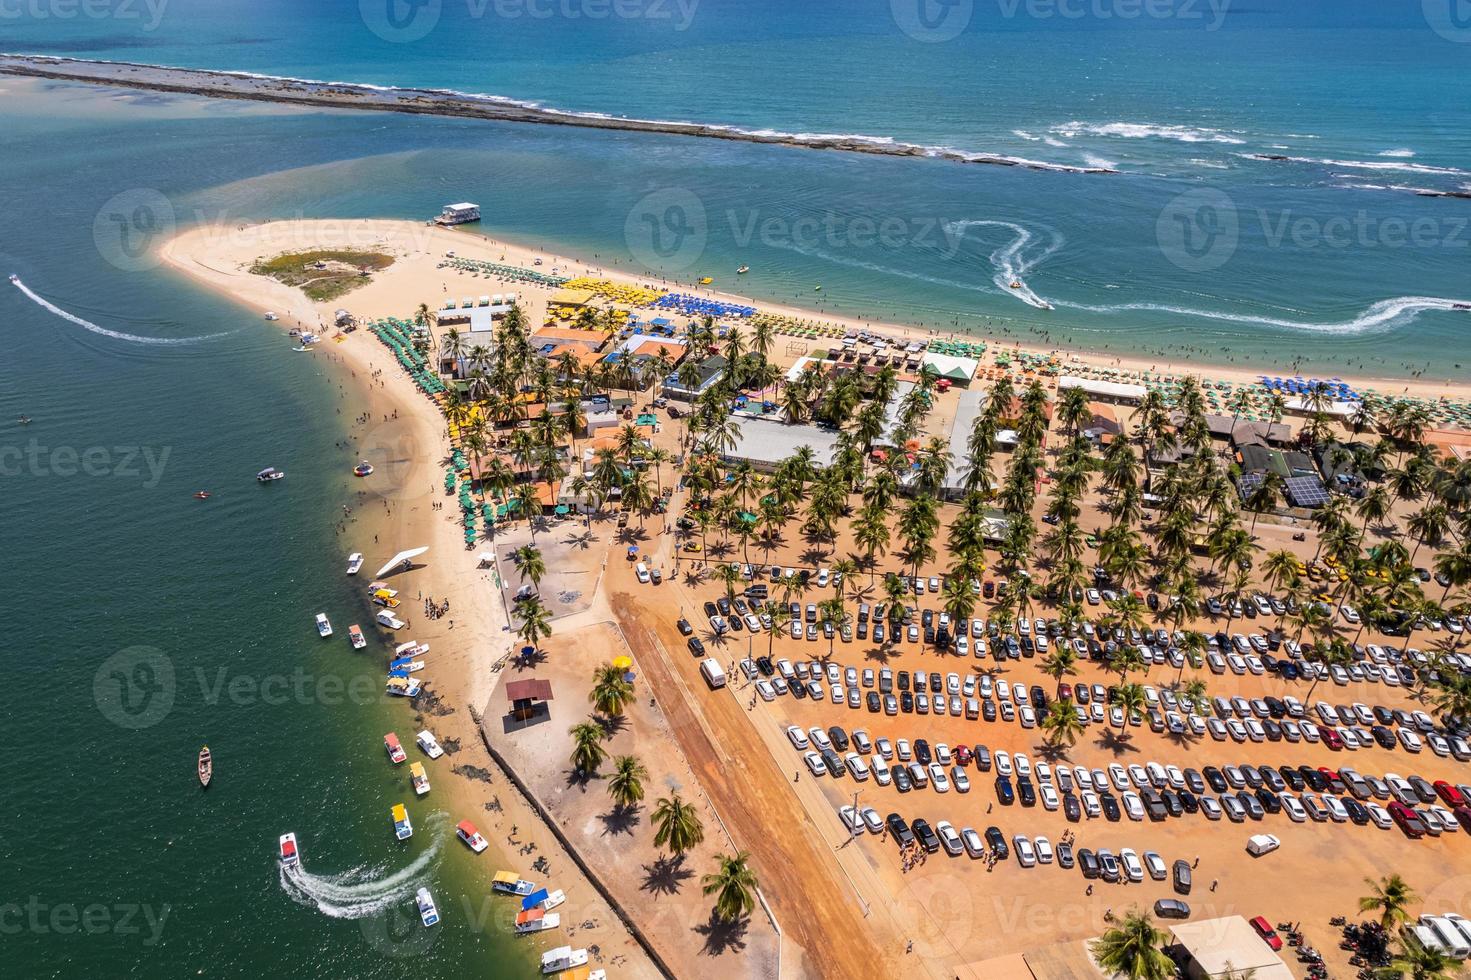 vista aérea da praia do gunga ou praia do gunga, com suas águas claras e coqueiros, maceio, alagoas. região nordeste do brasil. foto